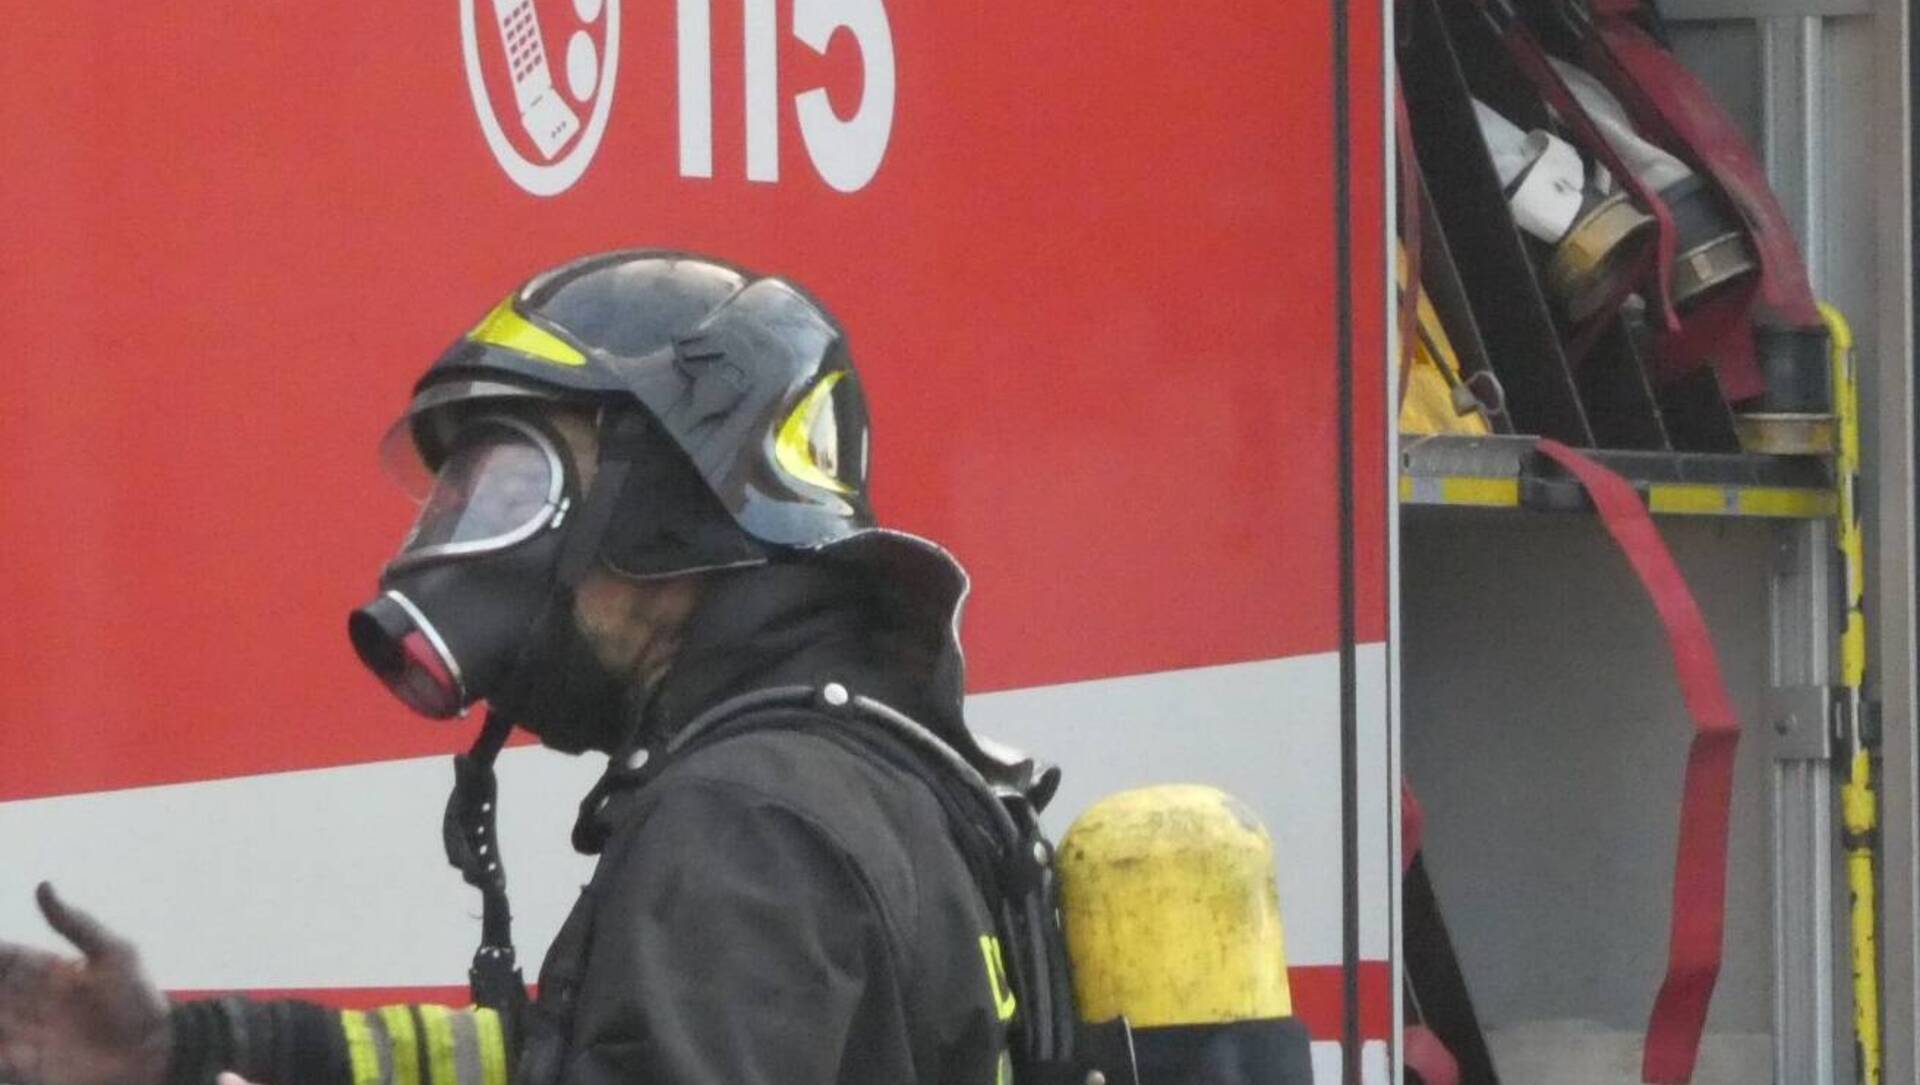 Cislago in attesa per l’ultimo saluto a Paolo Bassi, vittima dell’incendio nel garage